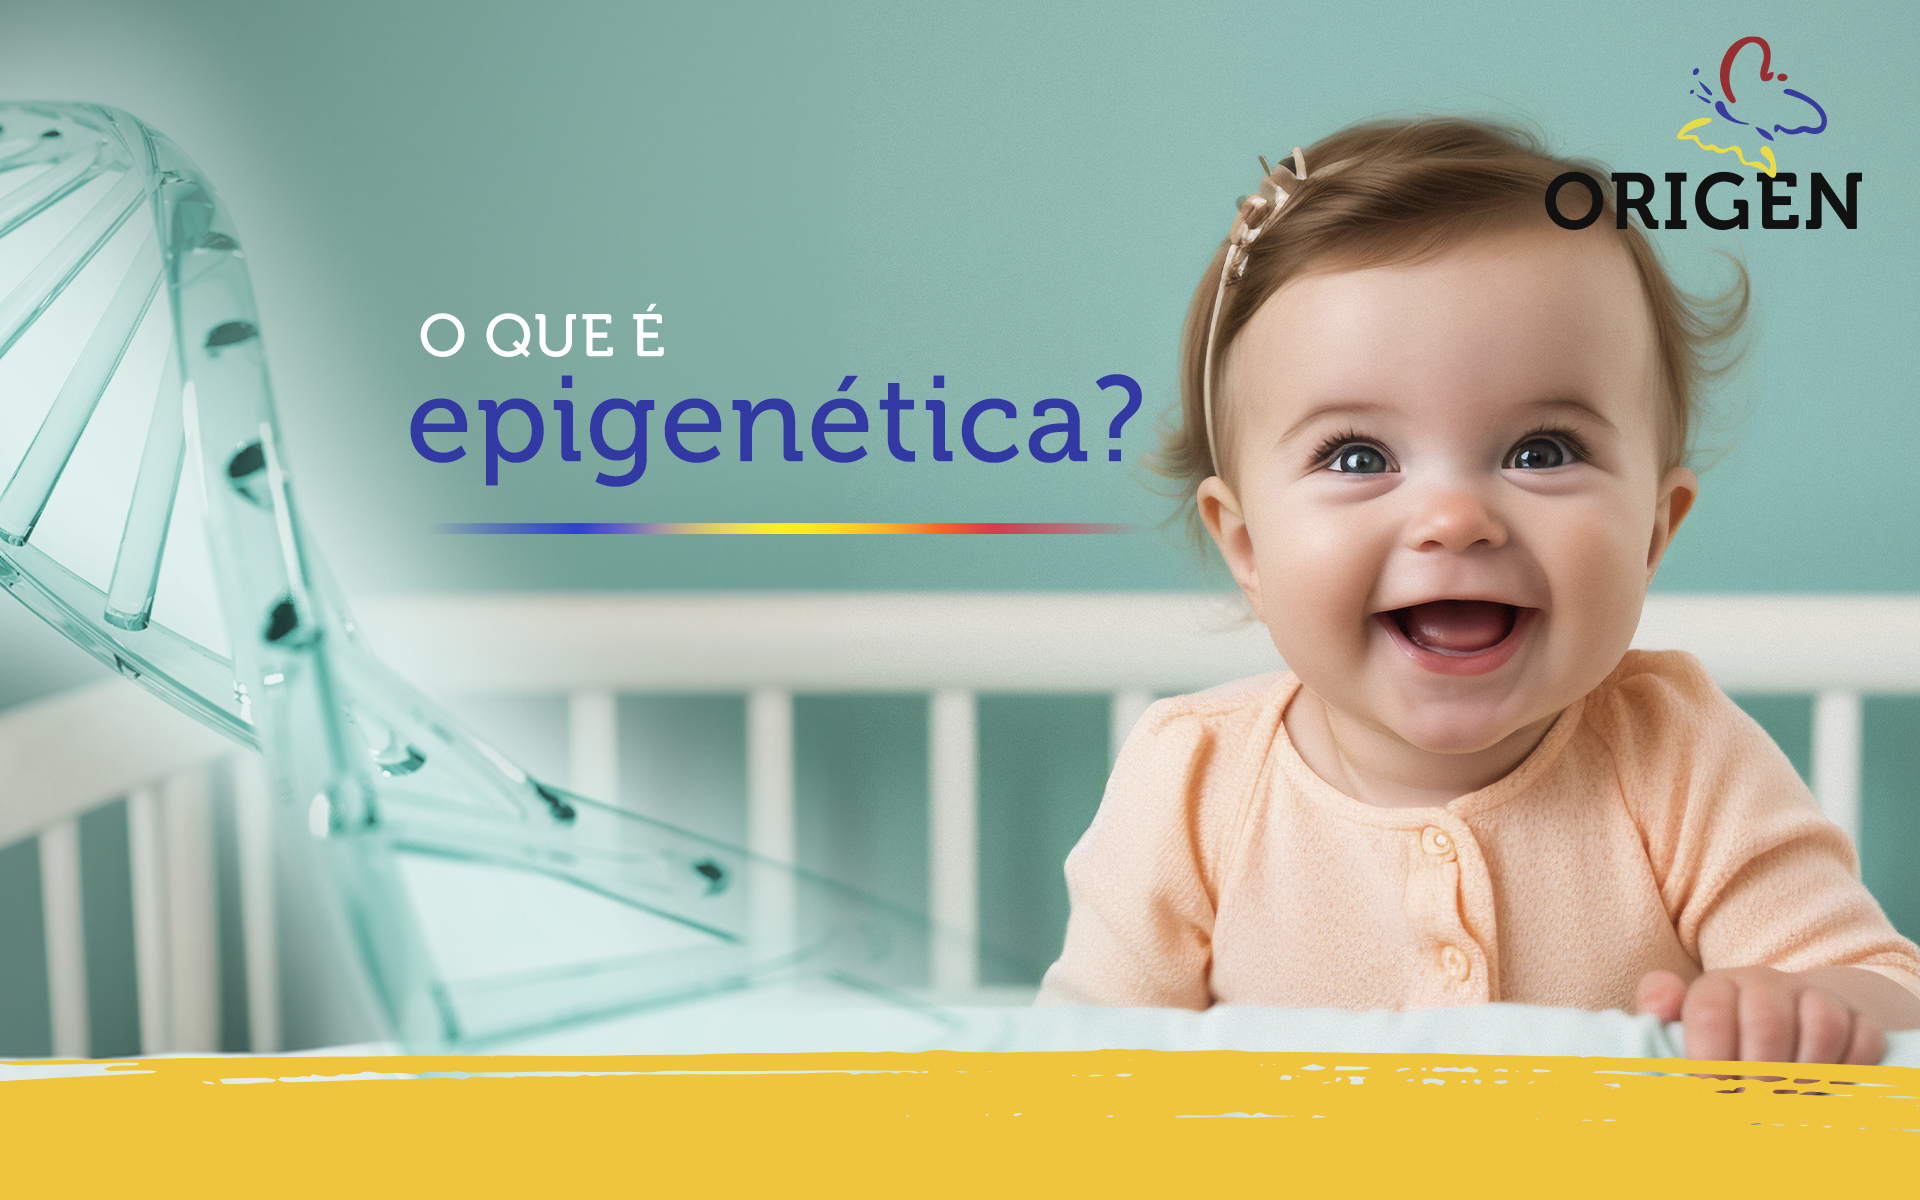 O que é epigenética?